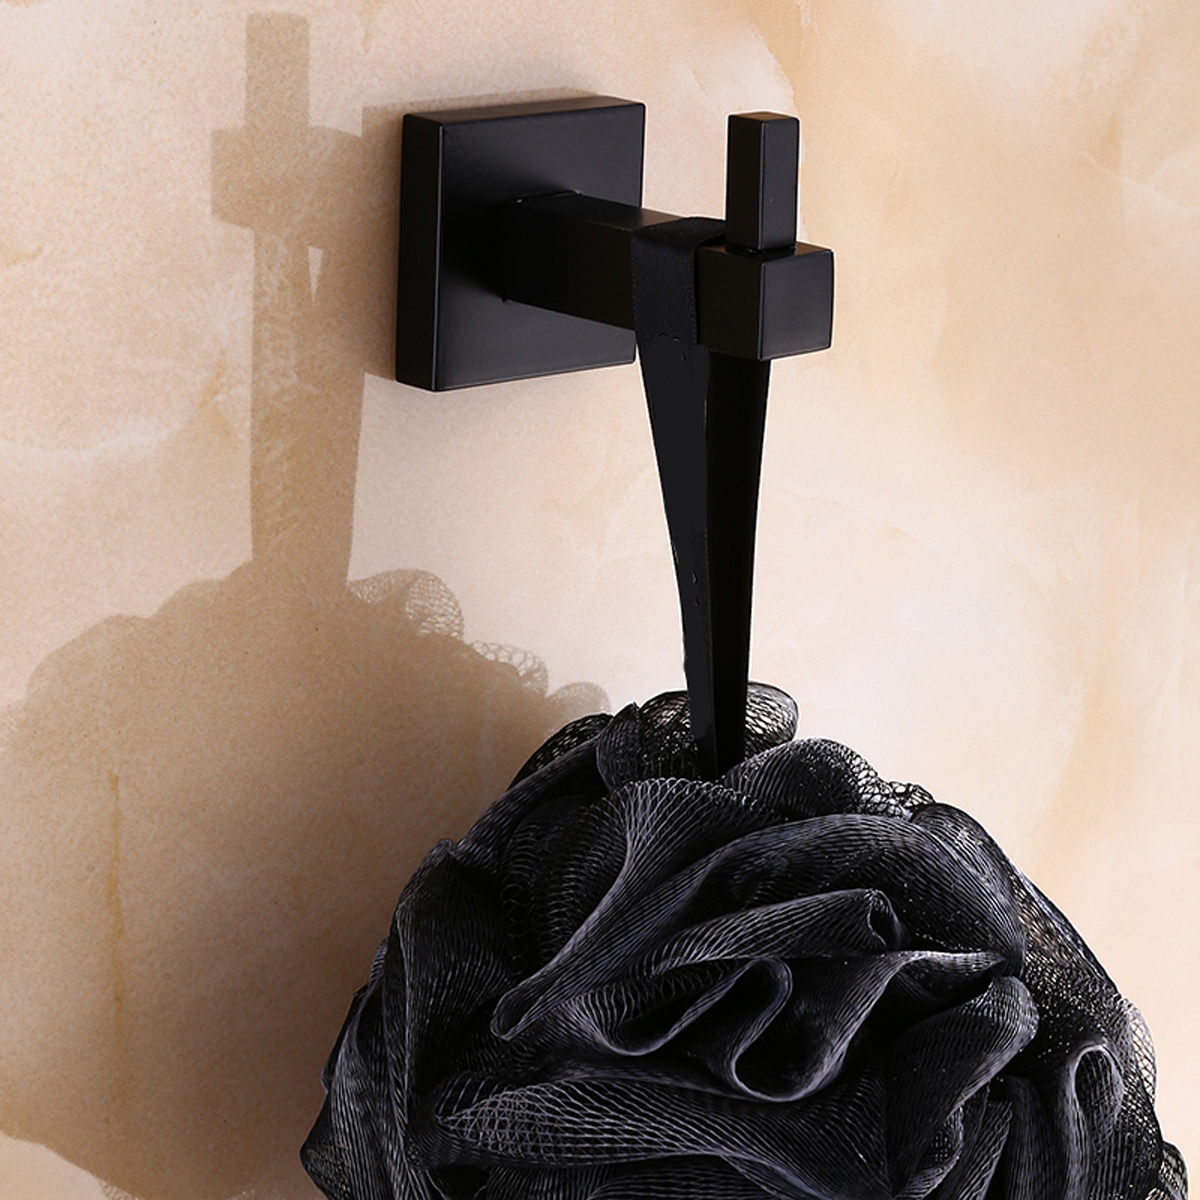 Matt-Black-Square-Towel-Rack-Rail-Tissue-Roll-Toilet-Brush-Holder-Robe-Hook-Bath-1336955